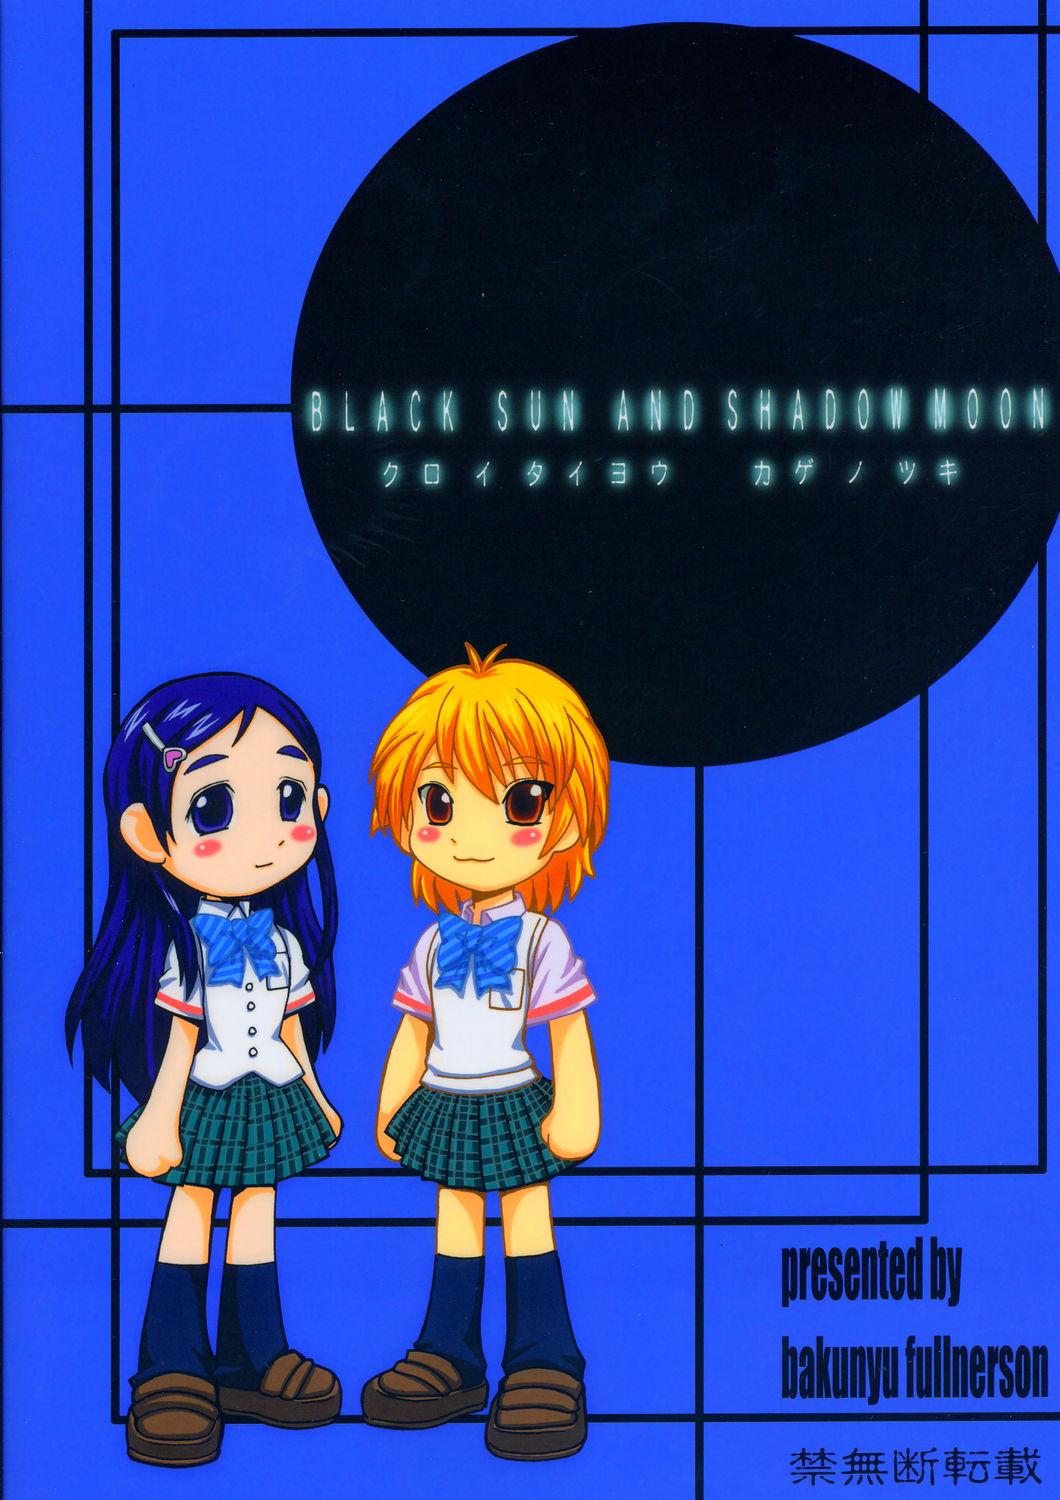 Kuroi Taiyou Kageno Tsuki EPISODE 2: somebody love you - Black Sun and Shadow Moon 2 43